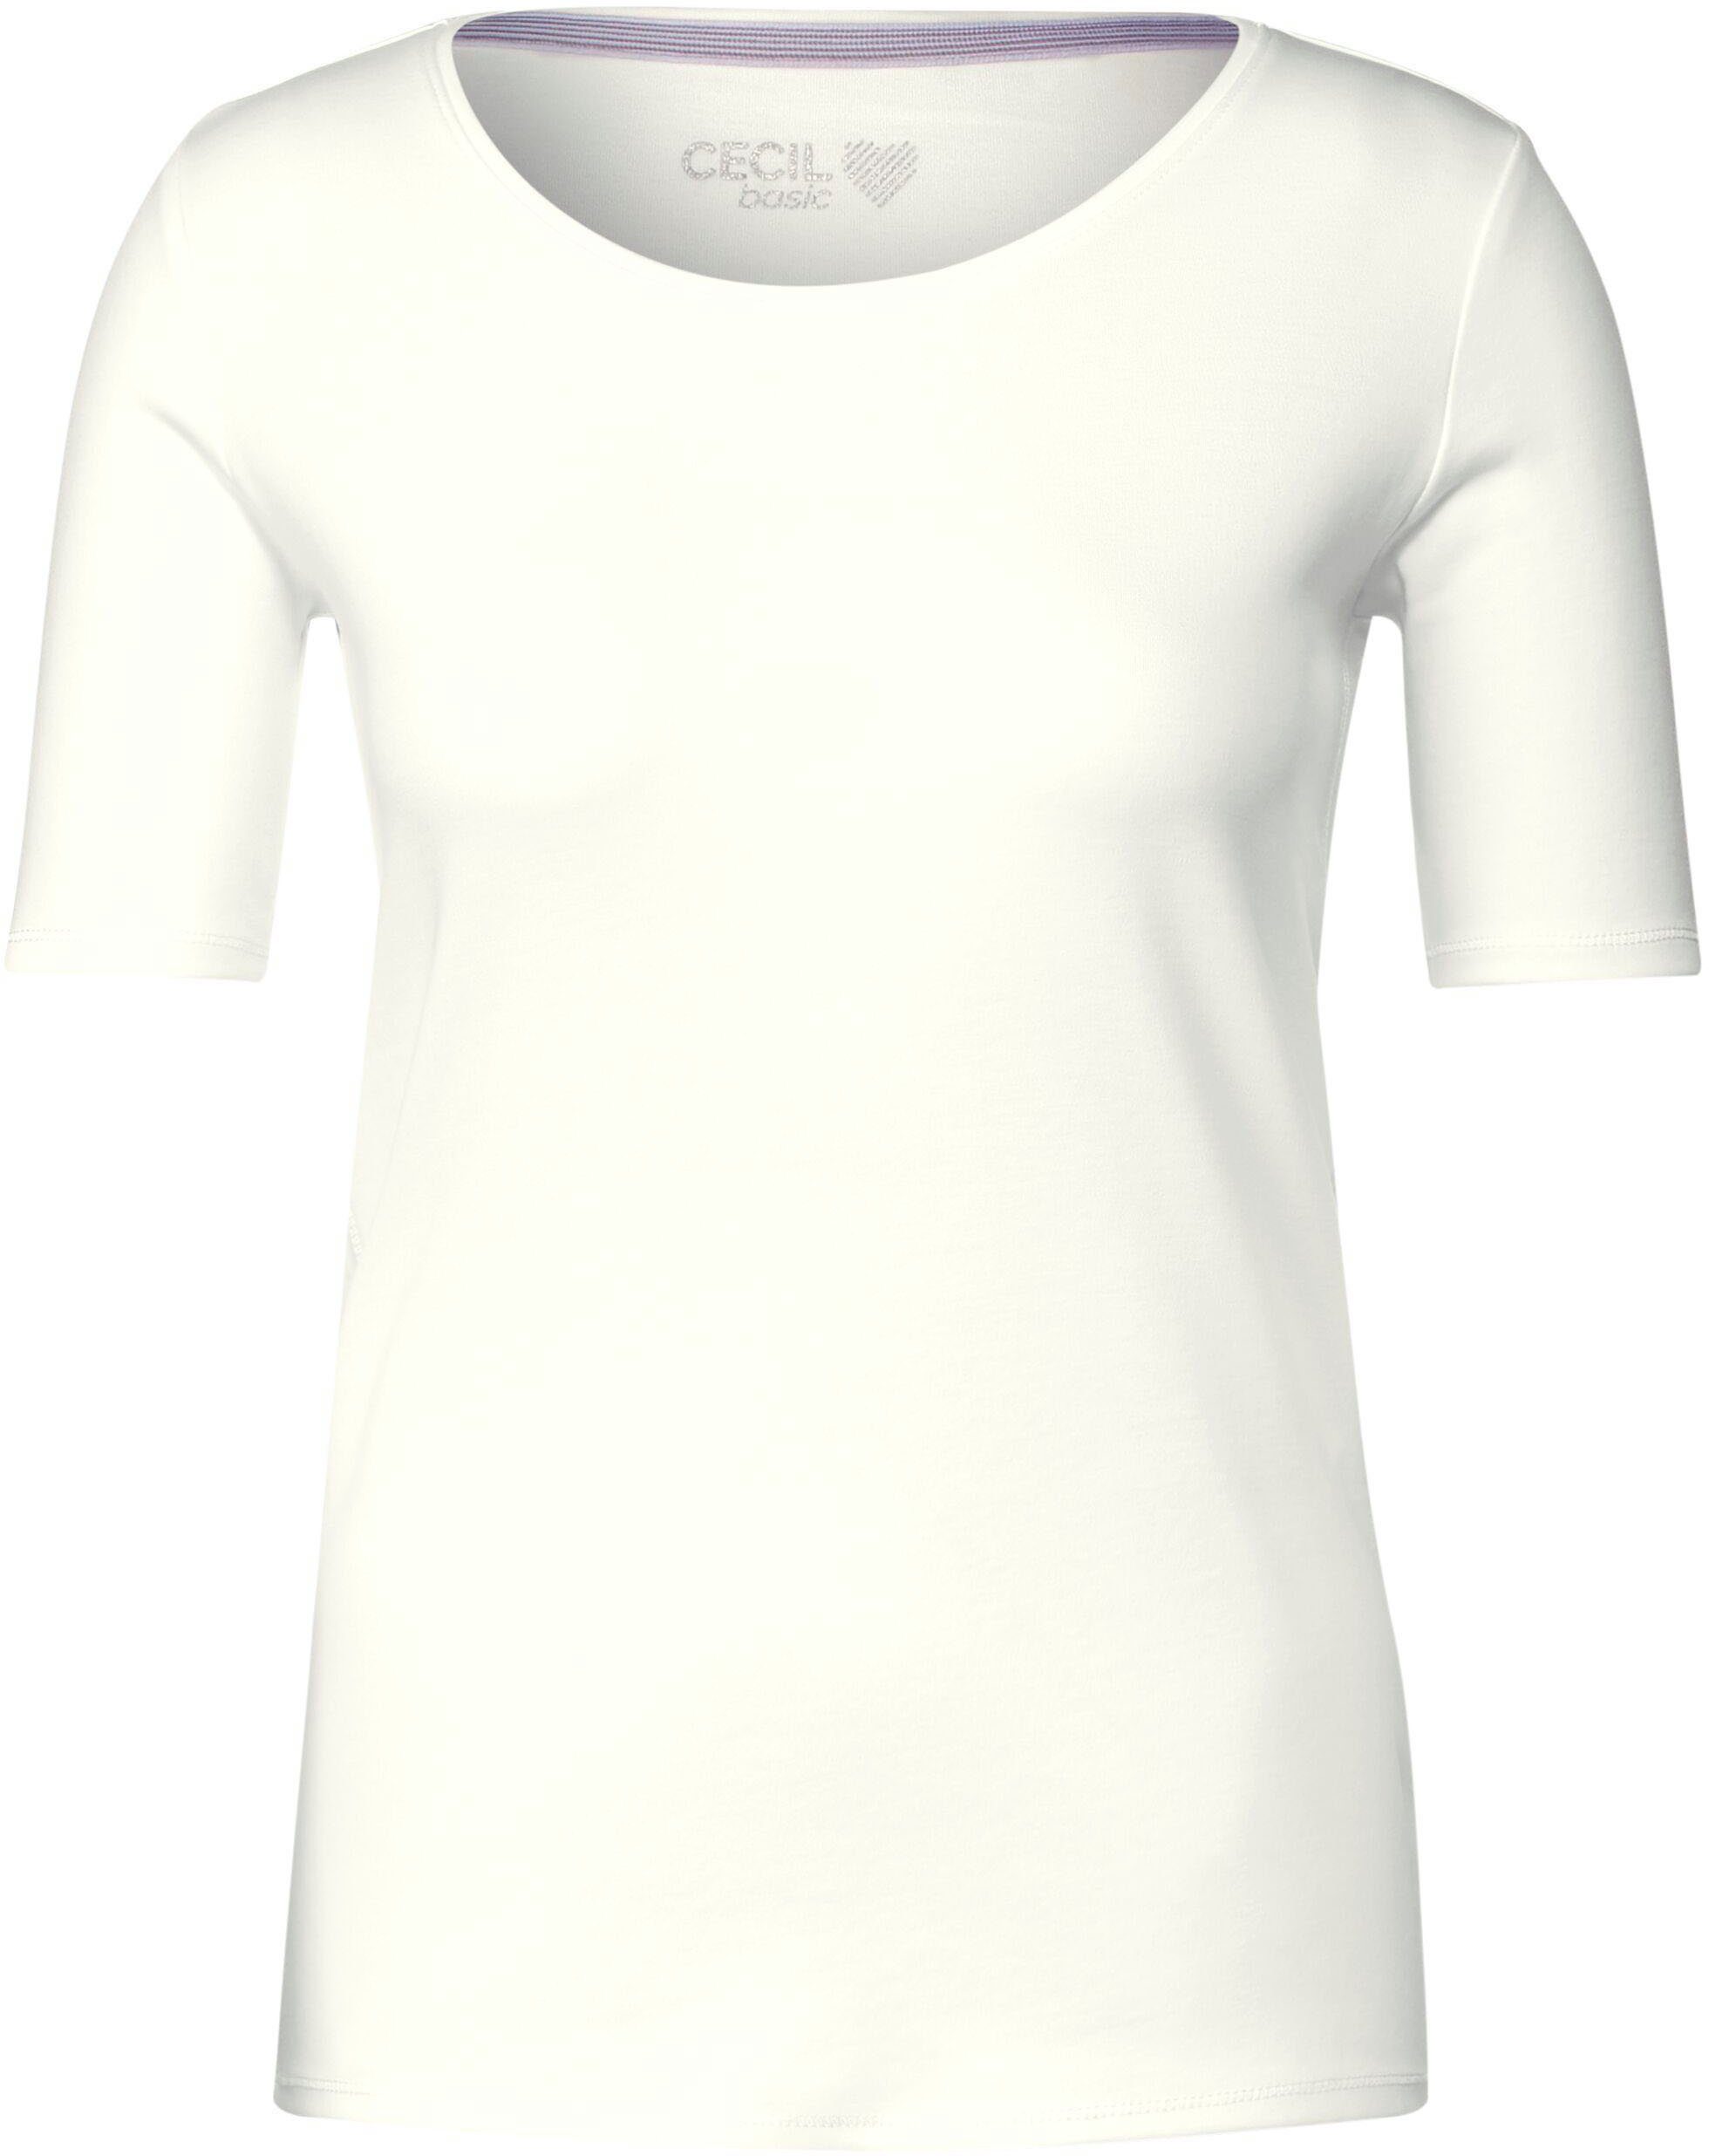 T-Shirt Rundhalsausschnitt vanilla white mit Cecil